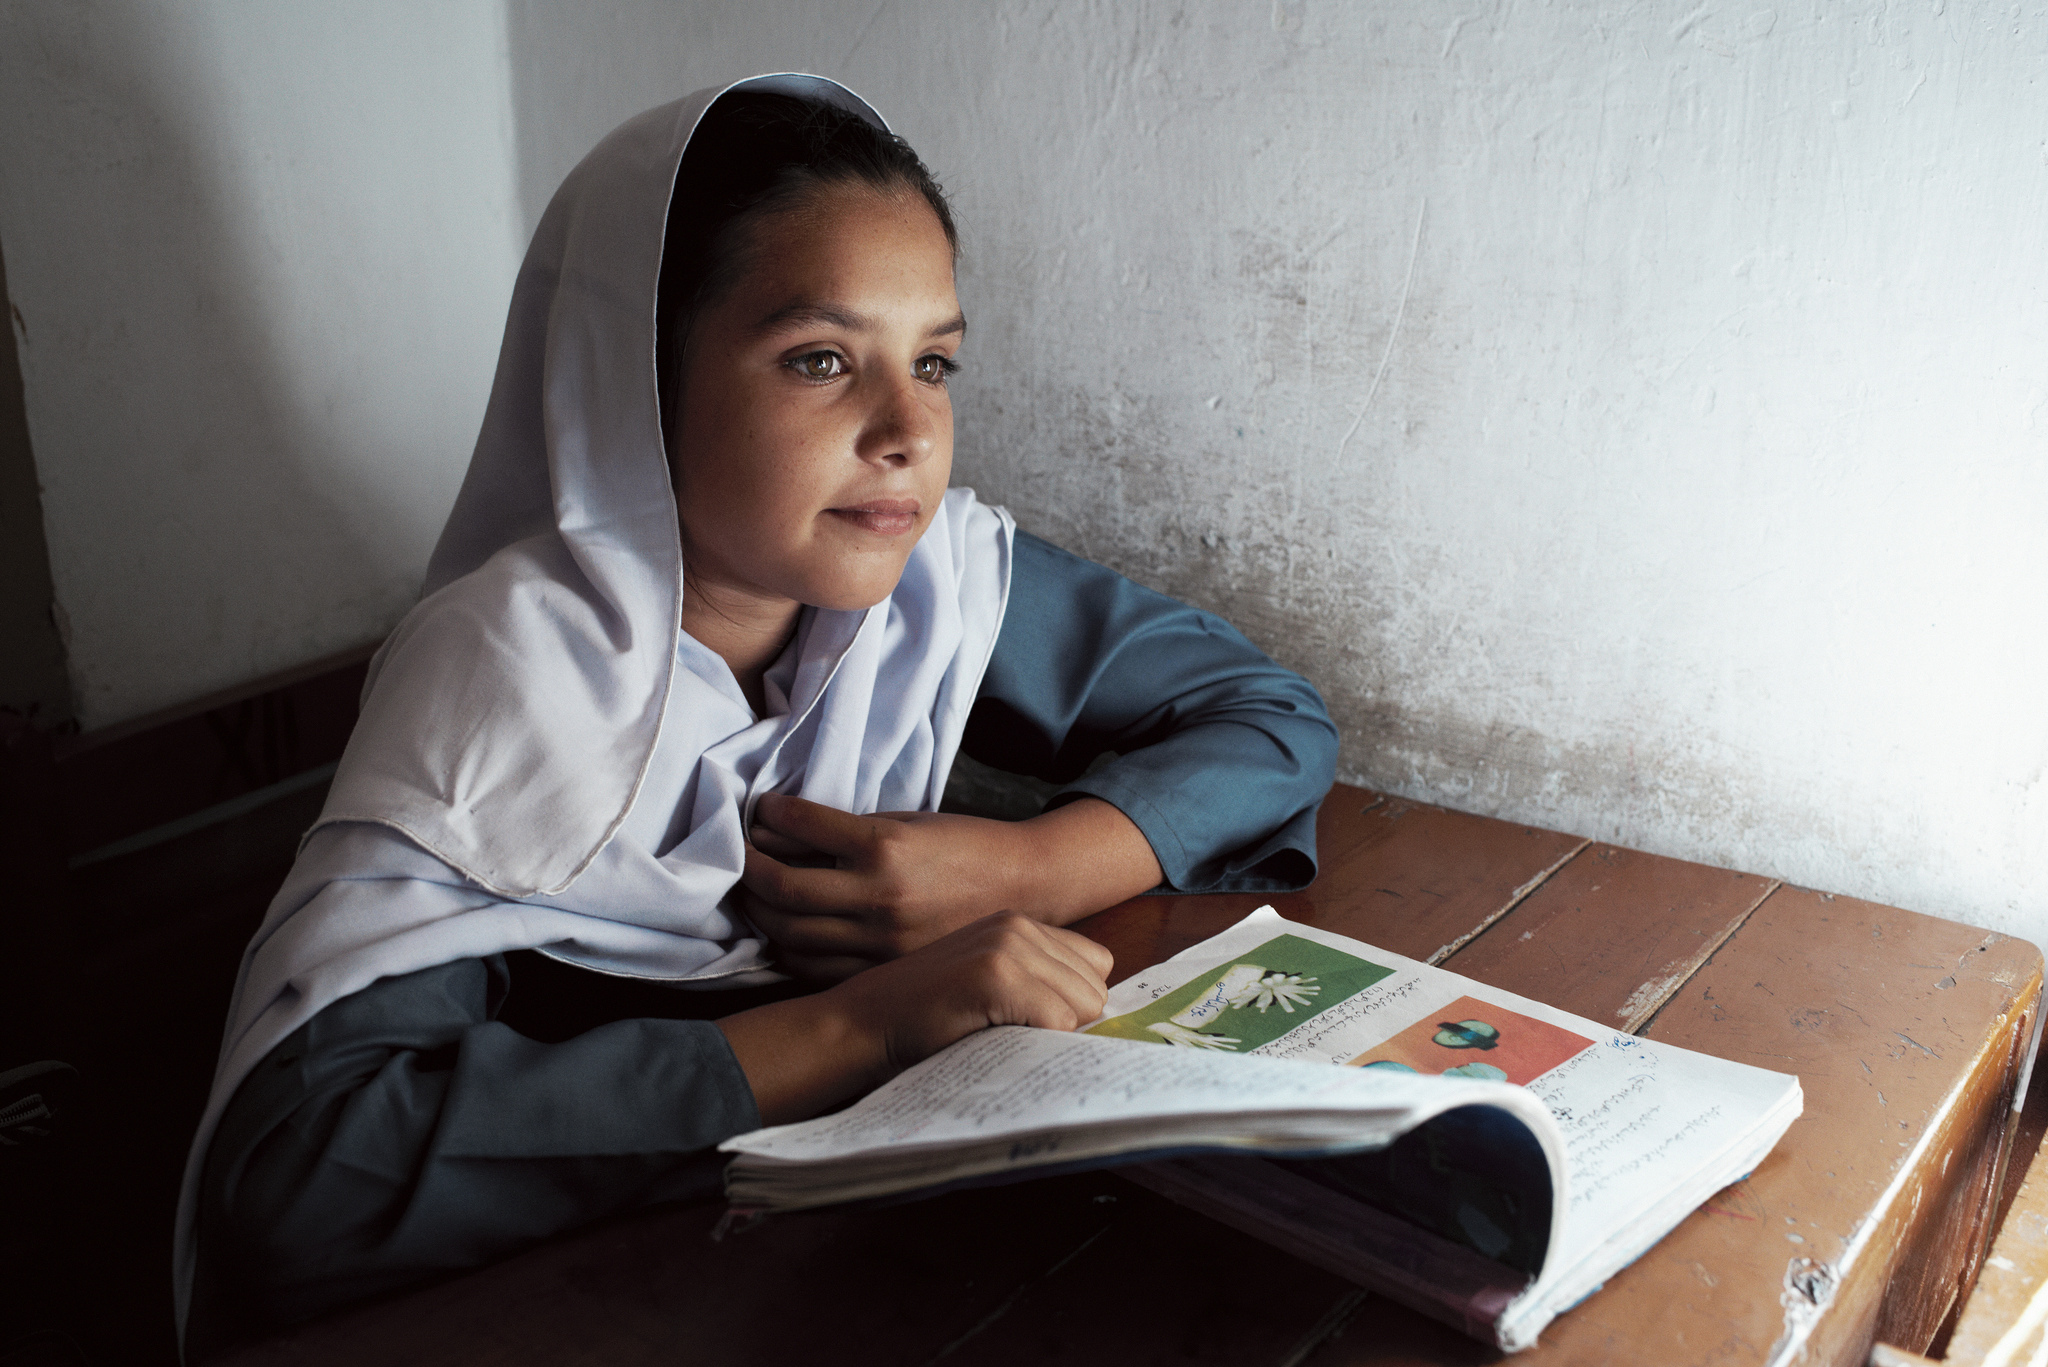 Rimsha Farooq, élève de niveau 6, devant son livre pendant un cours à l'école Khinger Khurd, dans la province du Pendjab, au Pakistan. Septembre 2012. Crédit STARS/Kristian Buus